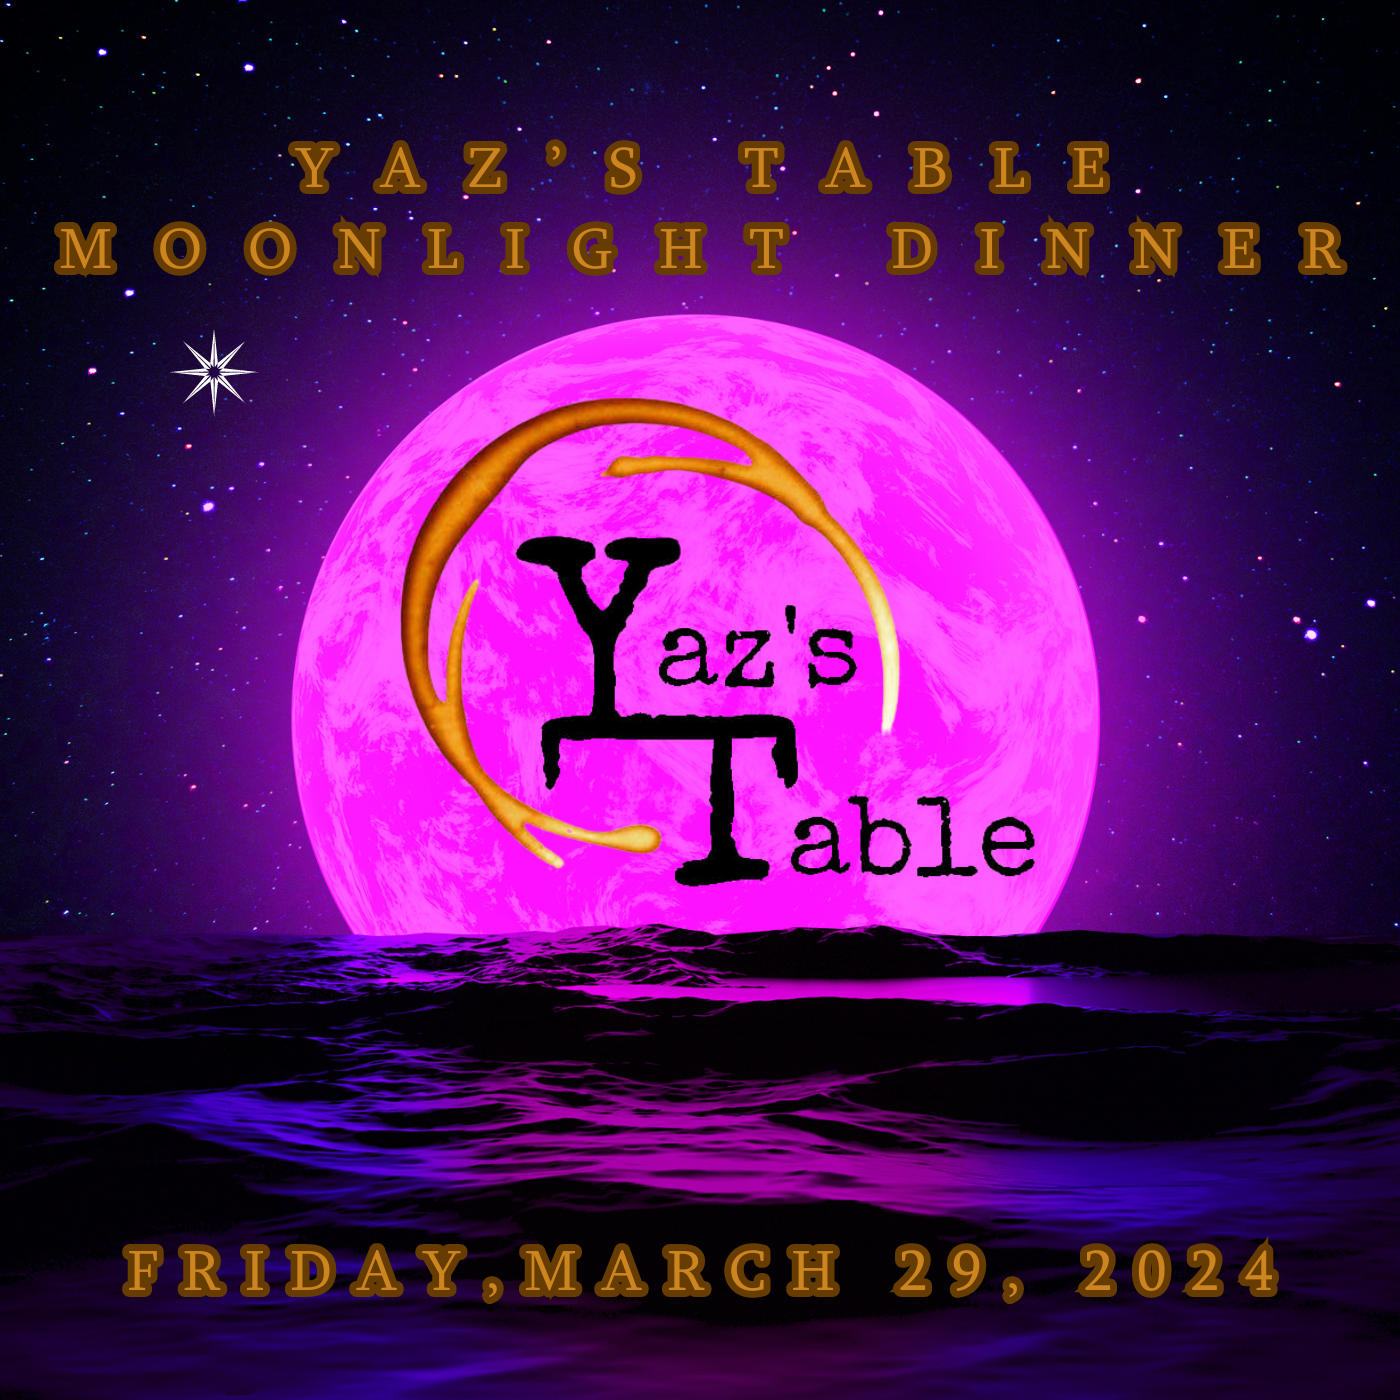 Yaz's Moonlight Dinner